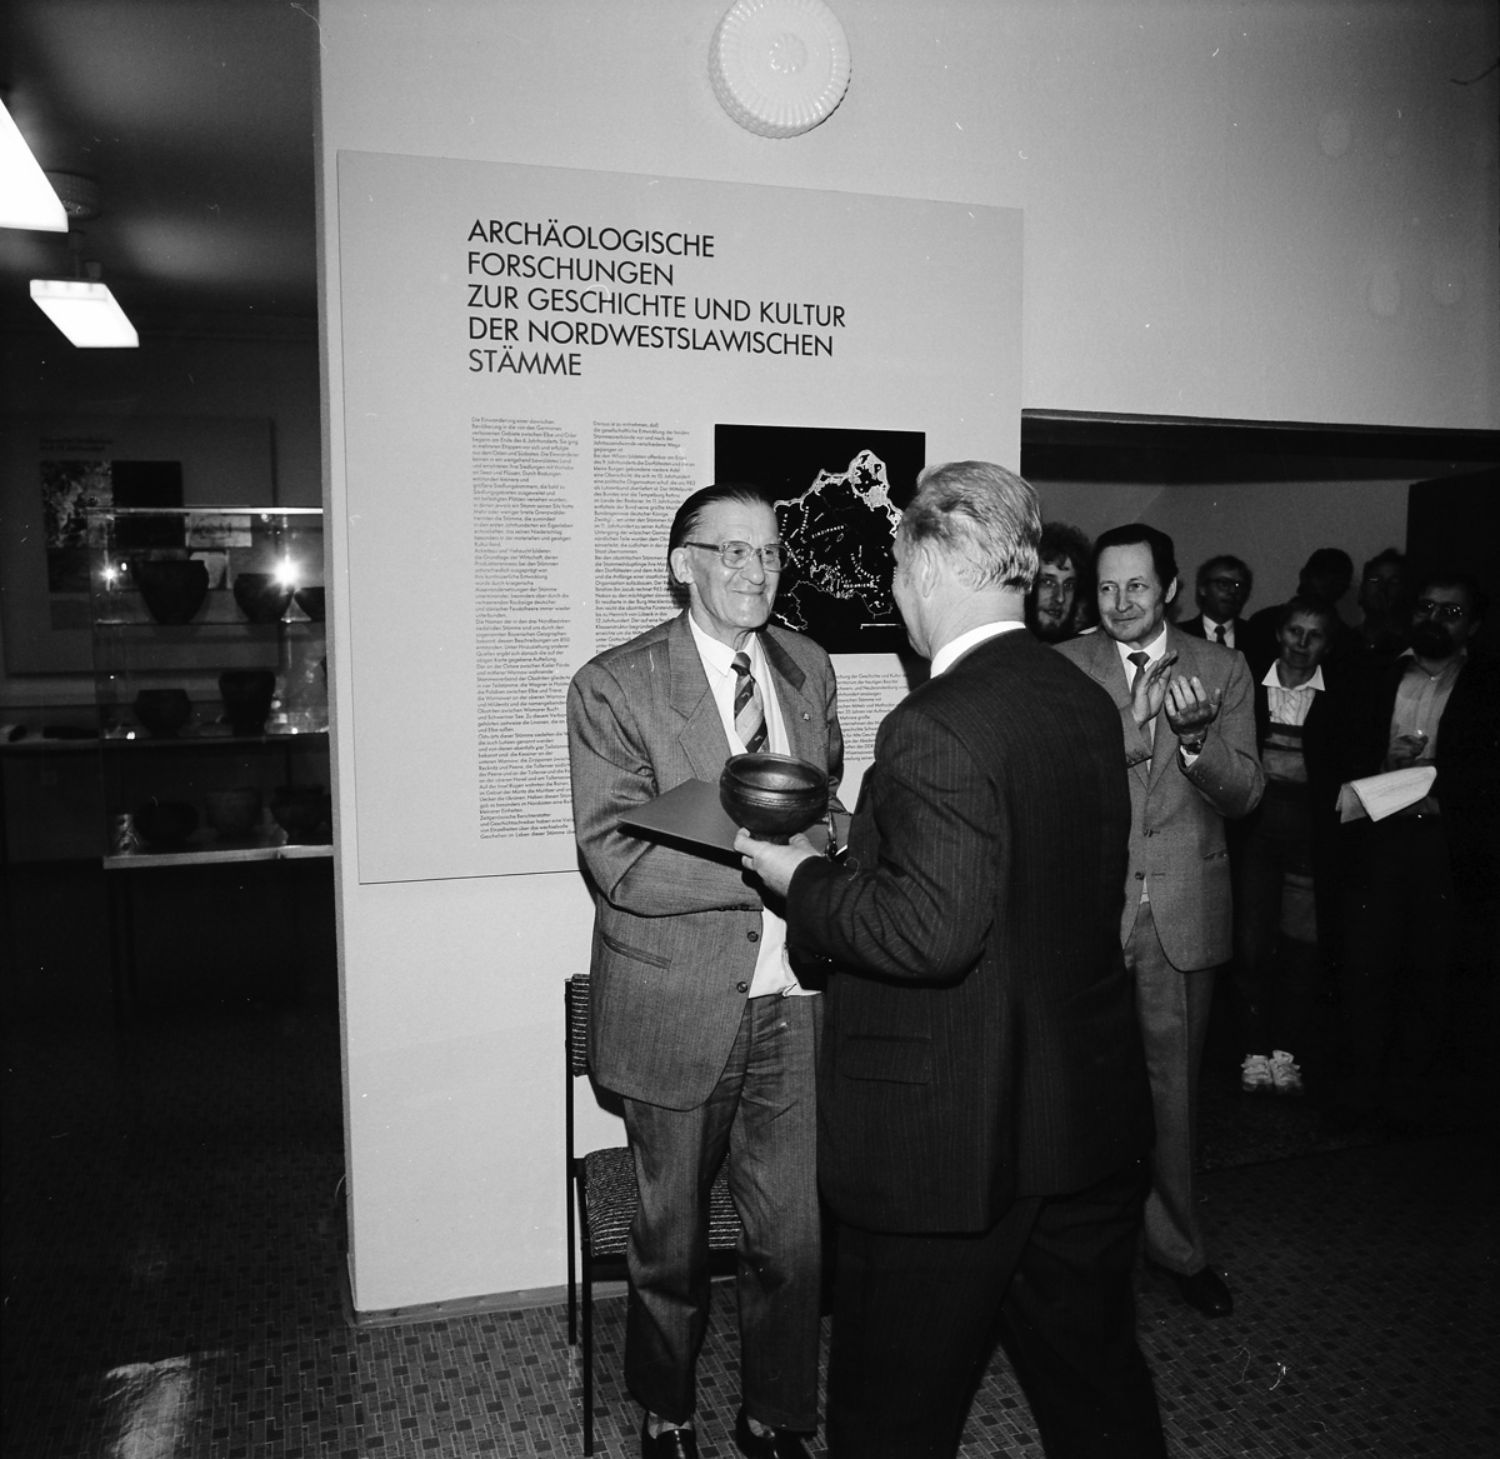 Ein Schwarz-weiß-Foto zeigt einen Mann, der vor einer Ausstellungstafel steht. Ein anderer Mann reicht ihm ein Tongefäß und schüttelt ihm die Hand. Rechts stehen Menschen und klatschen. (© LAKD M-V/LA)